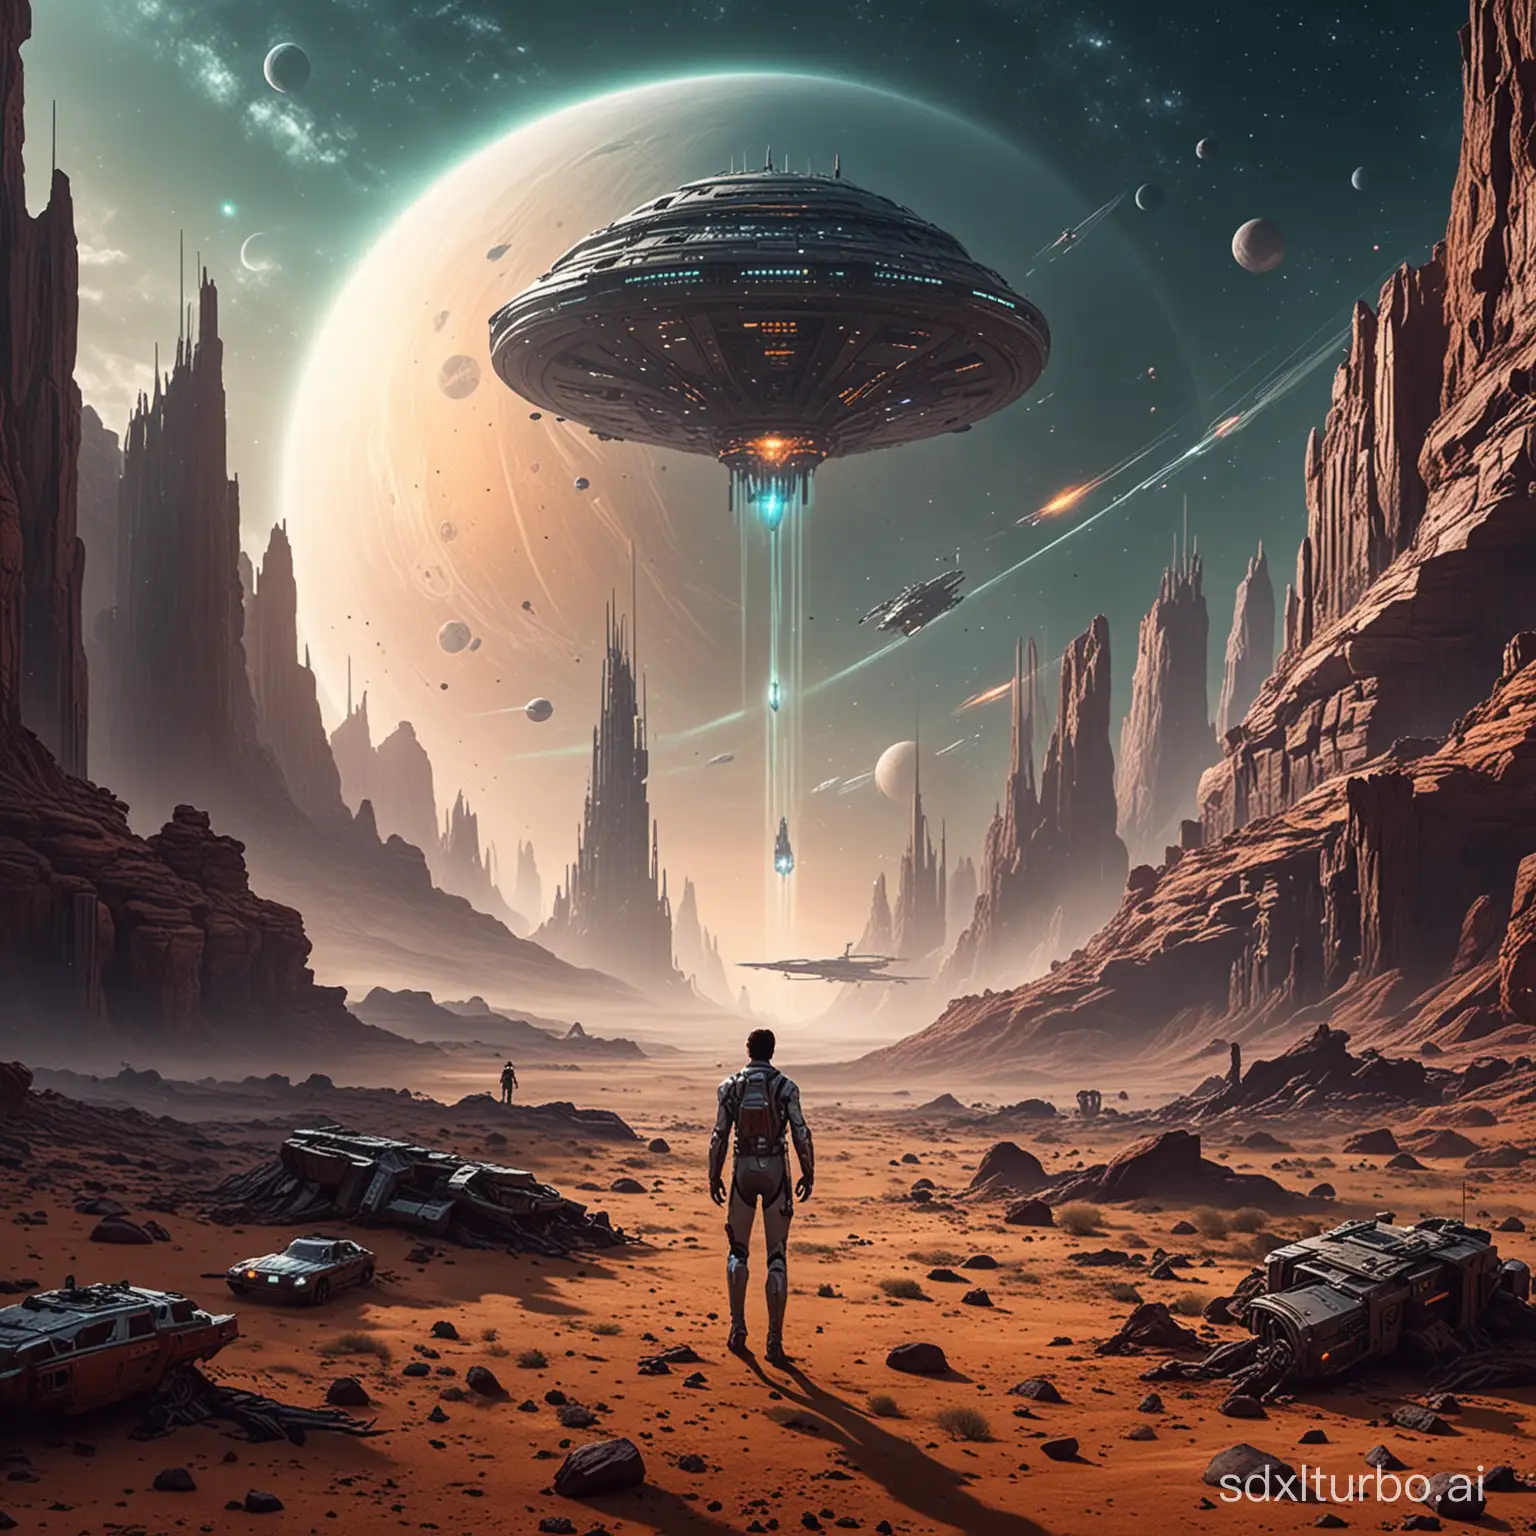 Futuristic-Spacecraft-Exploring-Alien-Worlds